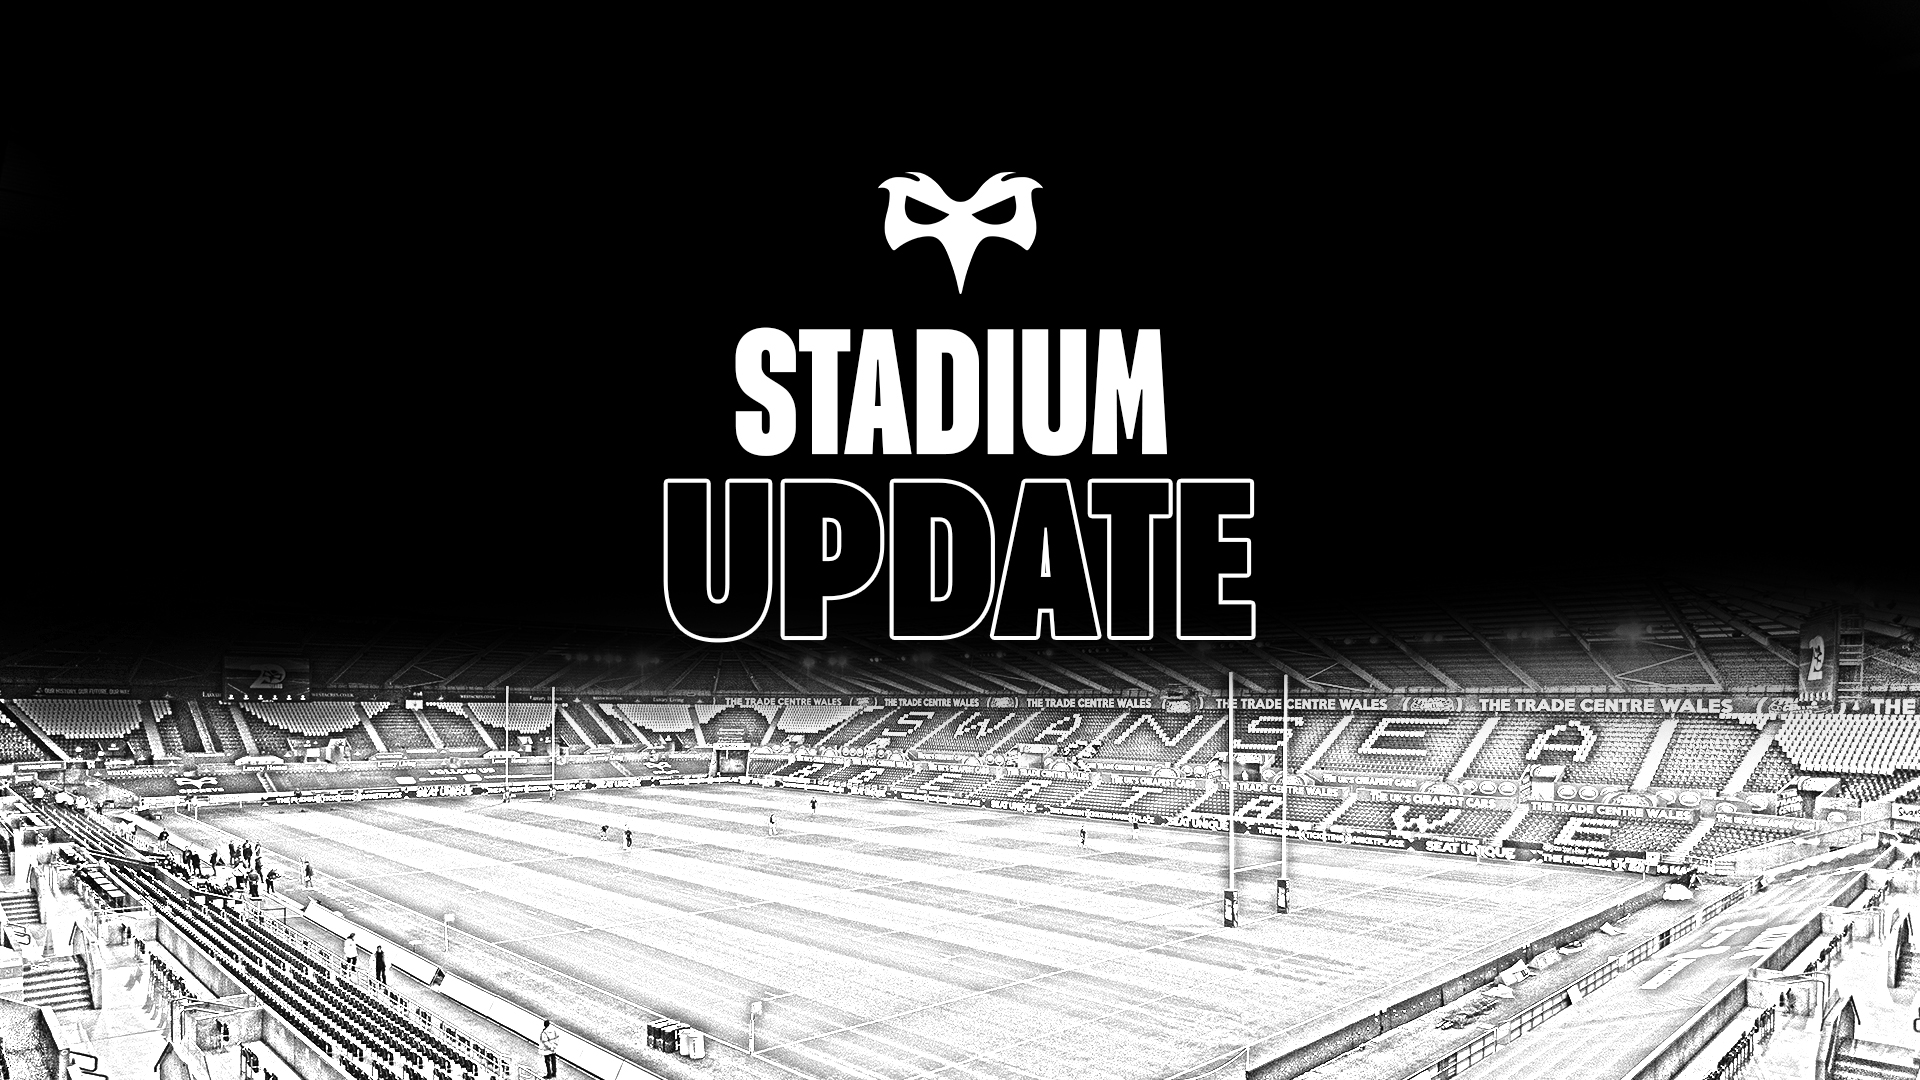 Stadium update